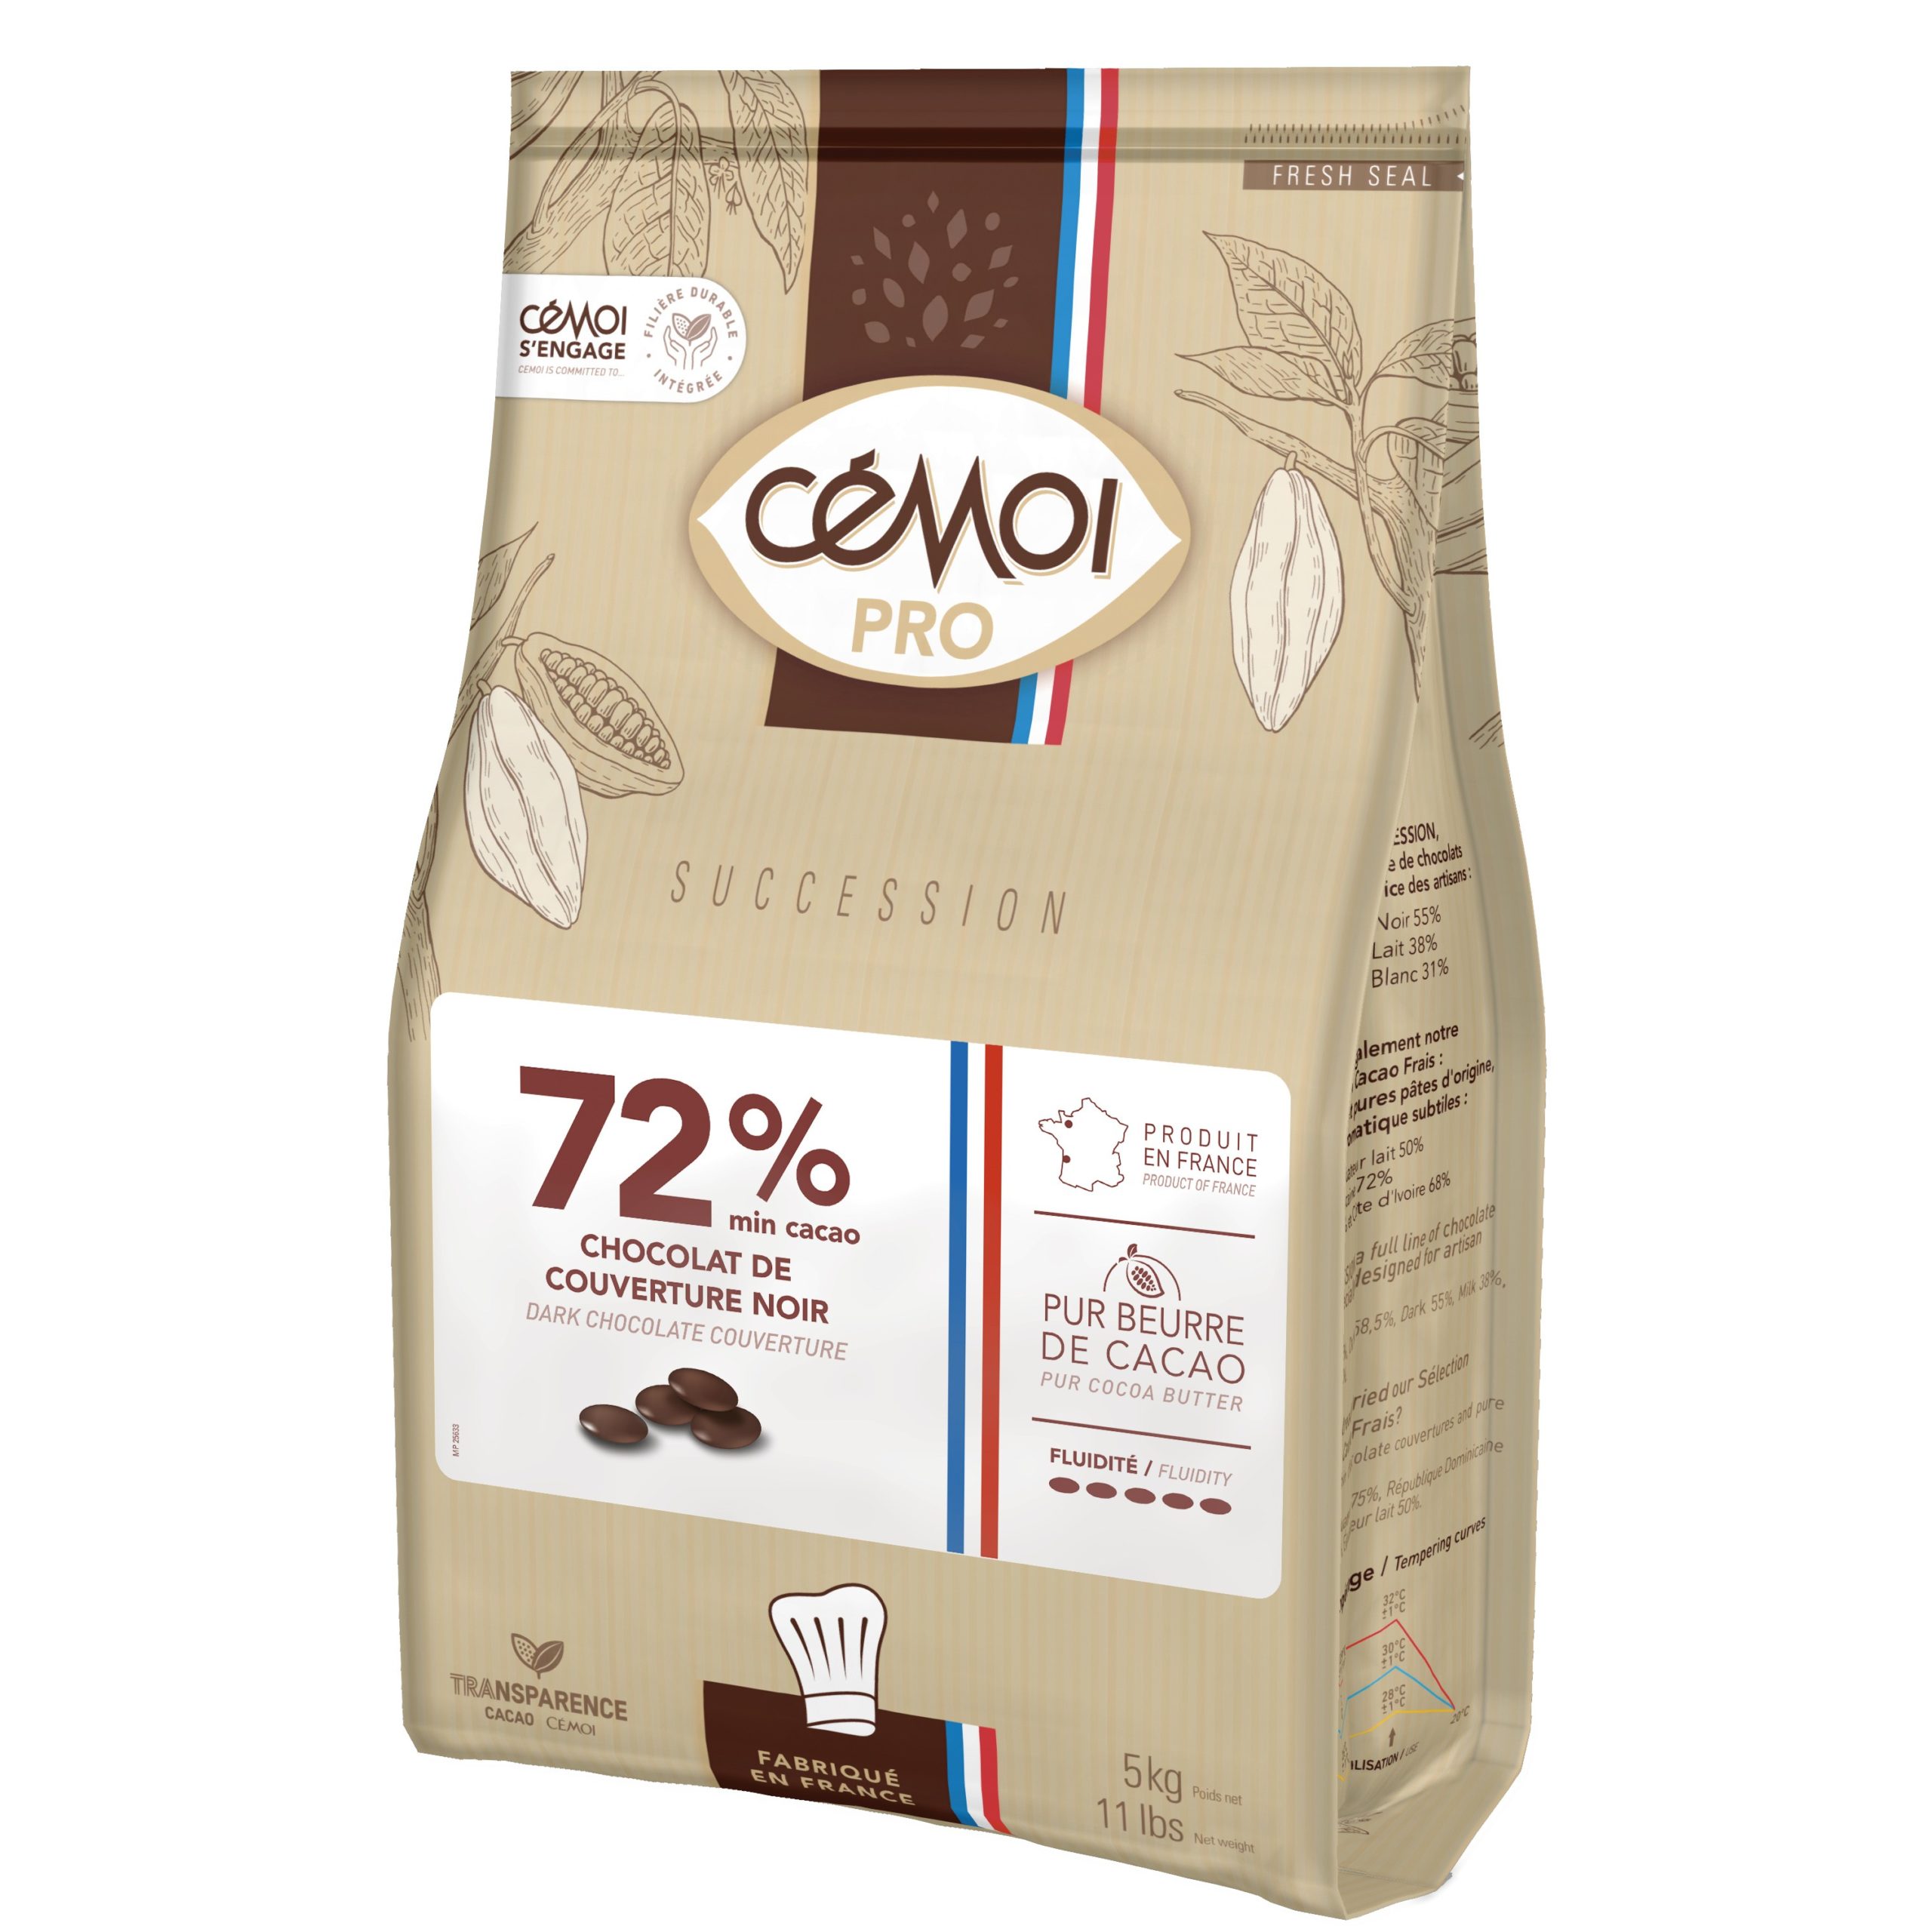 Accompagnement chocolat noir 72 % - CEMOI - Tubo de 800 g